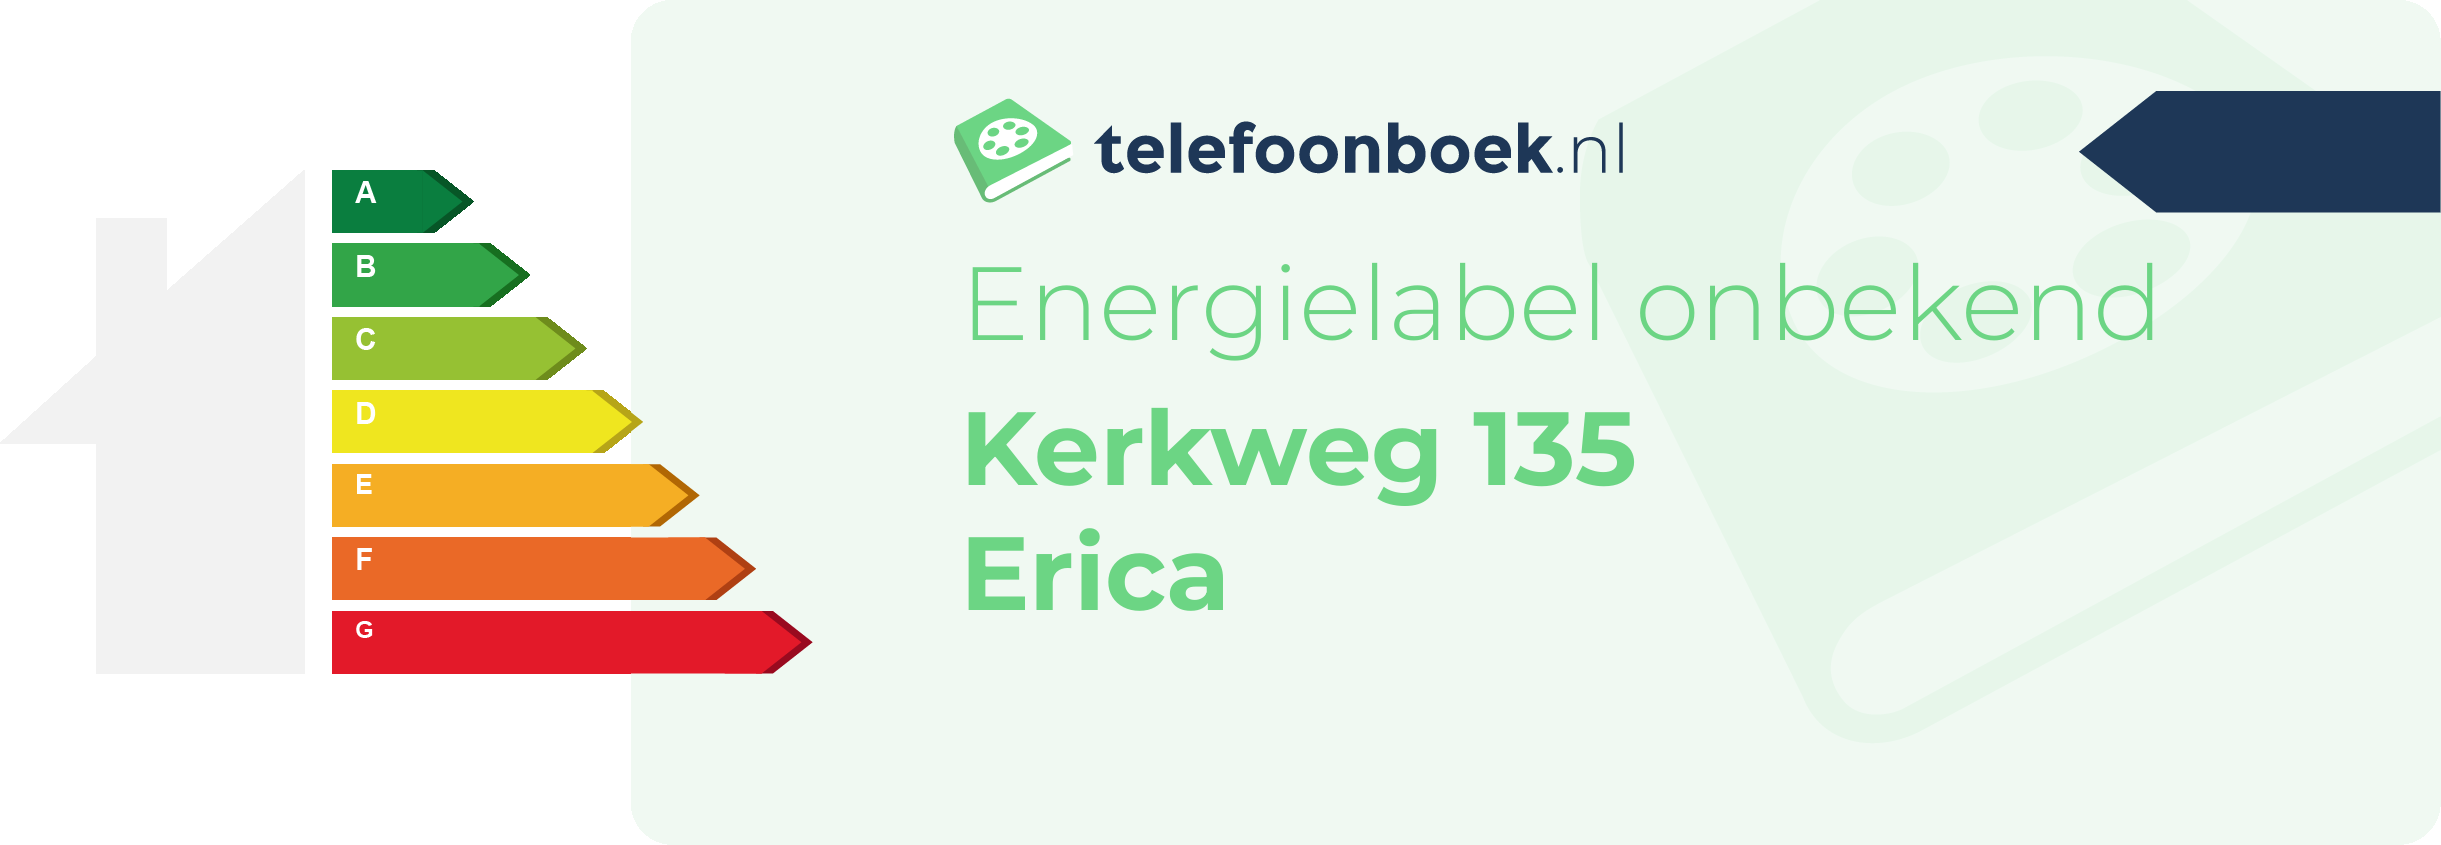 Energielabel Kerkweg 135 Erica